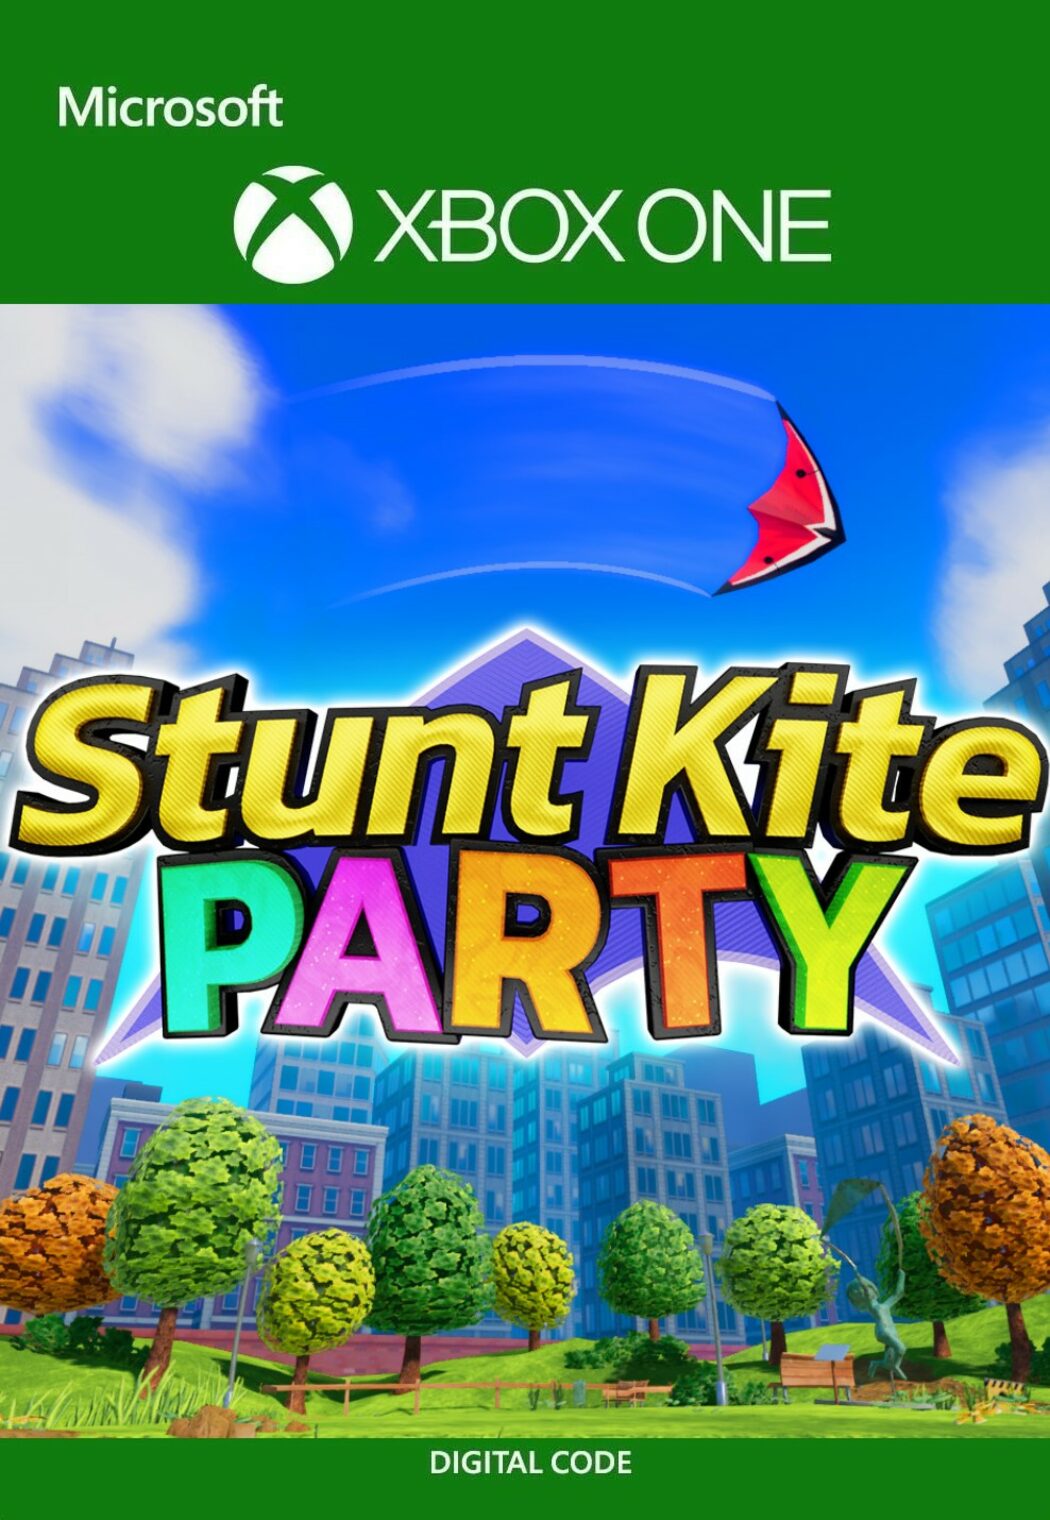 Buy Stunt Kite Party